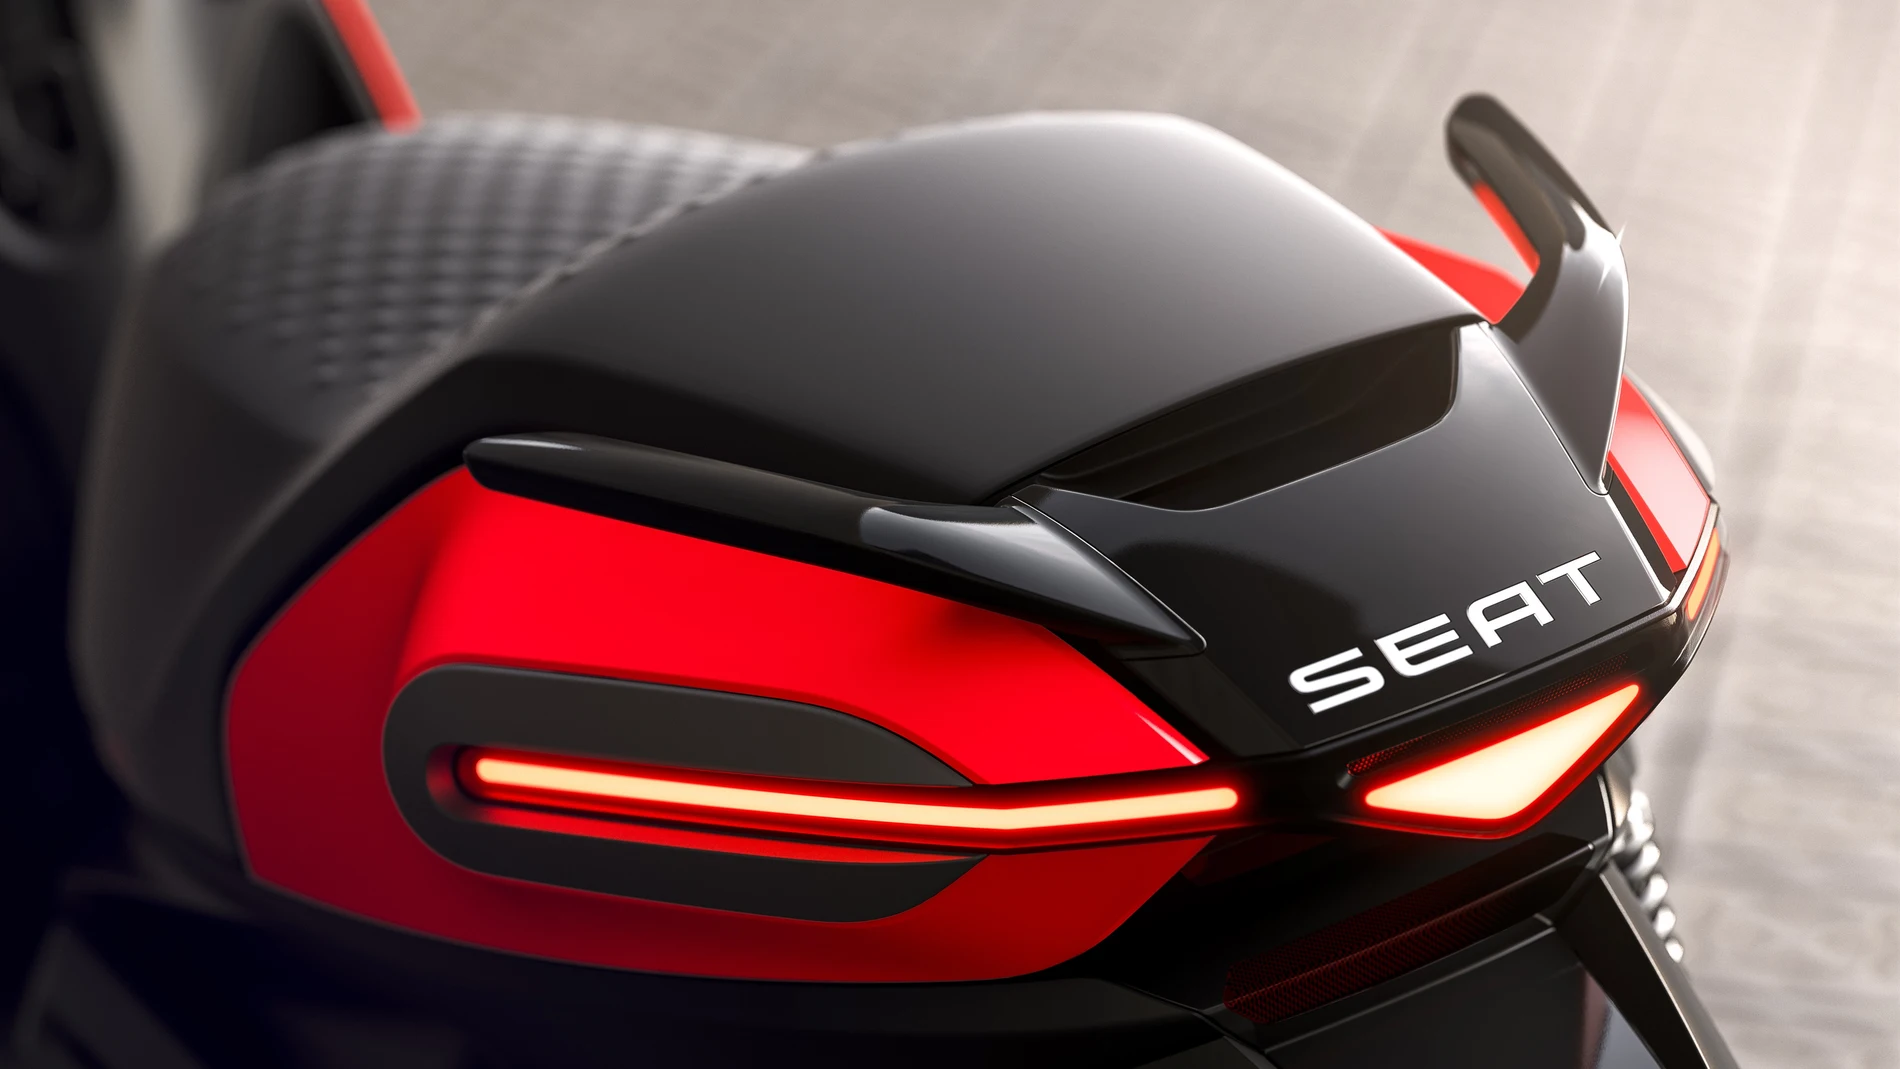 Economía/Motor.- Seat lanzará en 2020 su primera motocicleta eléctrica en colaboración con Silence